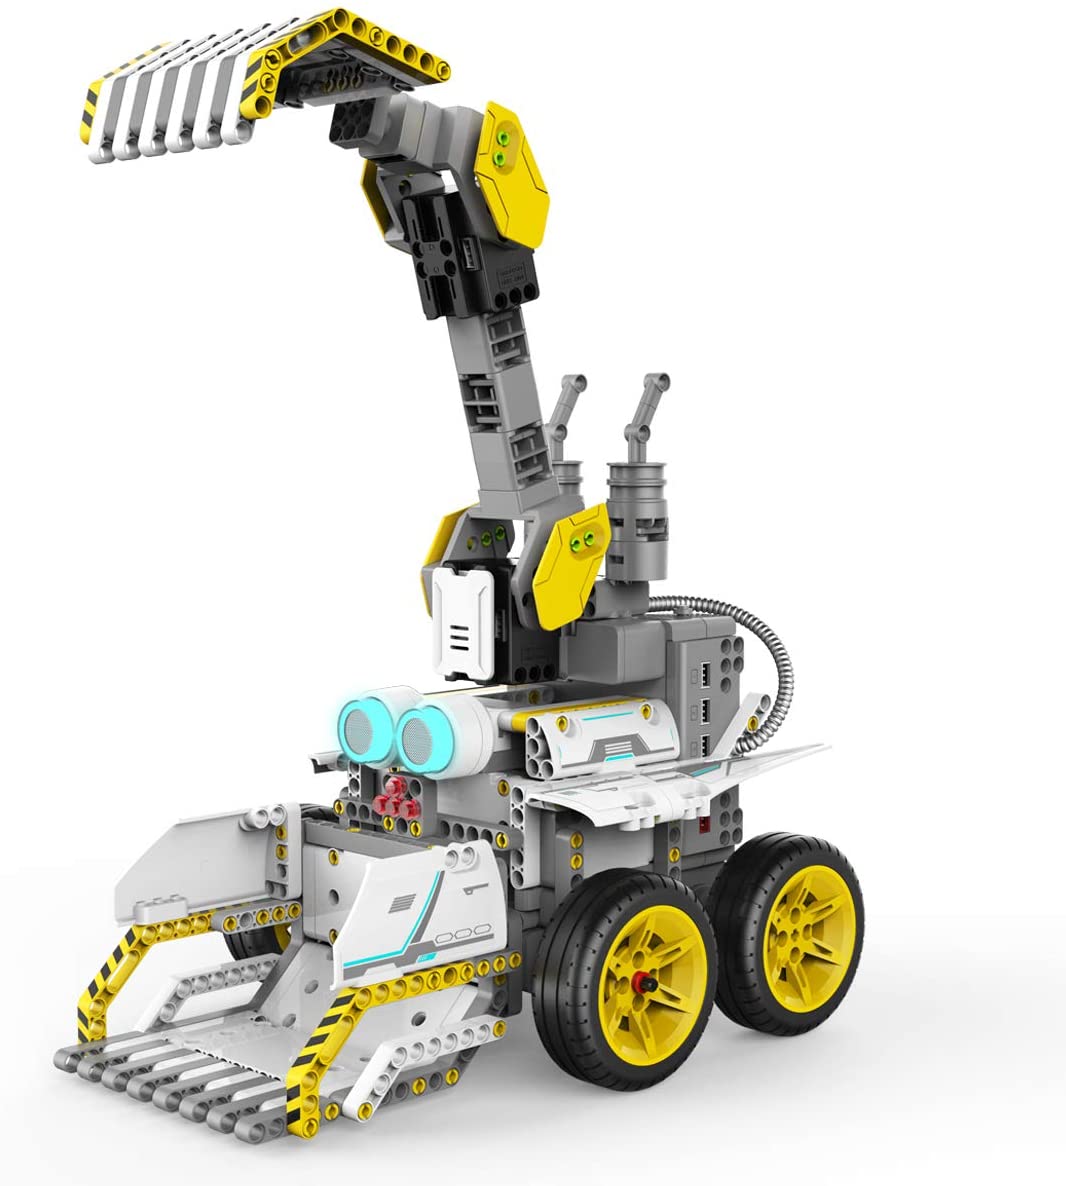 61H7D3Rz6El. Ac Sl1200 دمدمة وسحق وحرث في سلسلة Ubtech Jimu Robot Builderbots الجديدة: Truckbots Kit. باستخدام هذه المجموعة ، يمكنك إنشاء روبوتات قابلة للبناء وقابلة للتشفير مثل Dozerbot و Dirtbot أو تصميم إنشاء Jimu Robot الخاص بك. يتم توسيع المتعة من خلال منصة Blockly للتشفير ، مما يسمح للأطفال الذين تتراوح أعمارهم بين 8 سنوات وما فوق ببناء هذه الروبوتات وترميزها لأداء برامج وحيل لا حصر لها. قم بتنزيل تطبيق Jimu المجاني الذي يحتوي على إرشادات بناء خطوة بخطوة ، ثلاثية الأبعاد ، 360 درجة. الأعمار: 8+ سنوات. يشمل:
&Lt;Ul&Gt; &Lt;Li&Gt;410 أجزاء يتم تجميعها معًا&Lt;/Li&Gt; &Lt;Li&Gt;2 محركات مؤازرة آلية الحركة سلسة&Lt;/Li&Gt; &Lt;Li&Gt;2 محركات Dc&Lt;/Li&Gt; &Lt;Li&Gt;1 مستشعر بالموجات فوق الصوتية وضوء Rgb&Lt;/Li&Gt; &Lt;Li&Gt;1 صندوق التحكم الرئيسي&Lt;/Li&Gt; &Lt;Li&Gt;كابل Usb ودليل البدء السريع متضمن&Lt;/Li&Gt;
&Lt;/Ul&Gt;
يتطلب:
&Lt;Ul&Gt; &Lt;Li&Gt;مطلوب جهاز Ios أو Android متوافق (يُباع بشكل منفصل).&Lt;/Li&Gt;
&Lt;/Ul&Gt;
بناء. كود.
&Lt;Ul&Gt; &Lt;Li&Gt;قم ببناء Dozerbot أو Dirtbot أو تصميم إنشاء Jimu Robot الخاص بك&Lt;/Li&Gt; &Lt;Li&Gt;تعلم كيفية استخدام Blockly Code لبرمجة الروبوت الخاص بك لتجاوز العوائق وحمل الأشياء وإنشاء تأثيرات لونية والمزيد&Lt;/Li&Gt; &Lt;Li&Gt;قم بإنشاء إجراءات مخصصة جديدة تمامًا باستخدام وظيفة Prp (وضعية ، وتسجيل ، وتشغيل)&Lt;/Li&Gt; &Lt;Li&Gt;لا توجد أدوات مطلوبة - تعليماتنا المتحركة ثلاثية الأبعاد بزاوية 360 درجة في تطبيق Jimu المجاني توجه المستخدمين عبر الخطوات&Lt;/Li&Gt; &Lt;Li&Gt;عظيم للأعمار من 8 سنوات وما فوق&Lt;/Li&Gt;
&Lt;/Ul&Gt; يوبي تيك , شاحنة جيمو روبوت